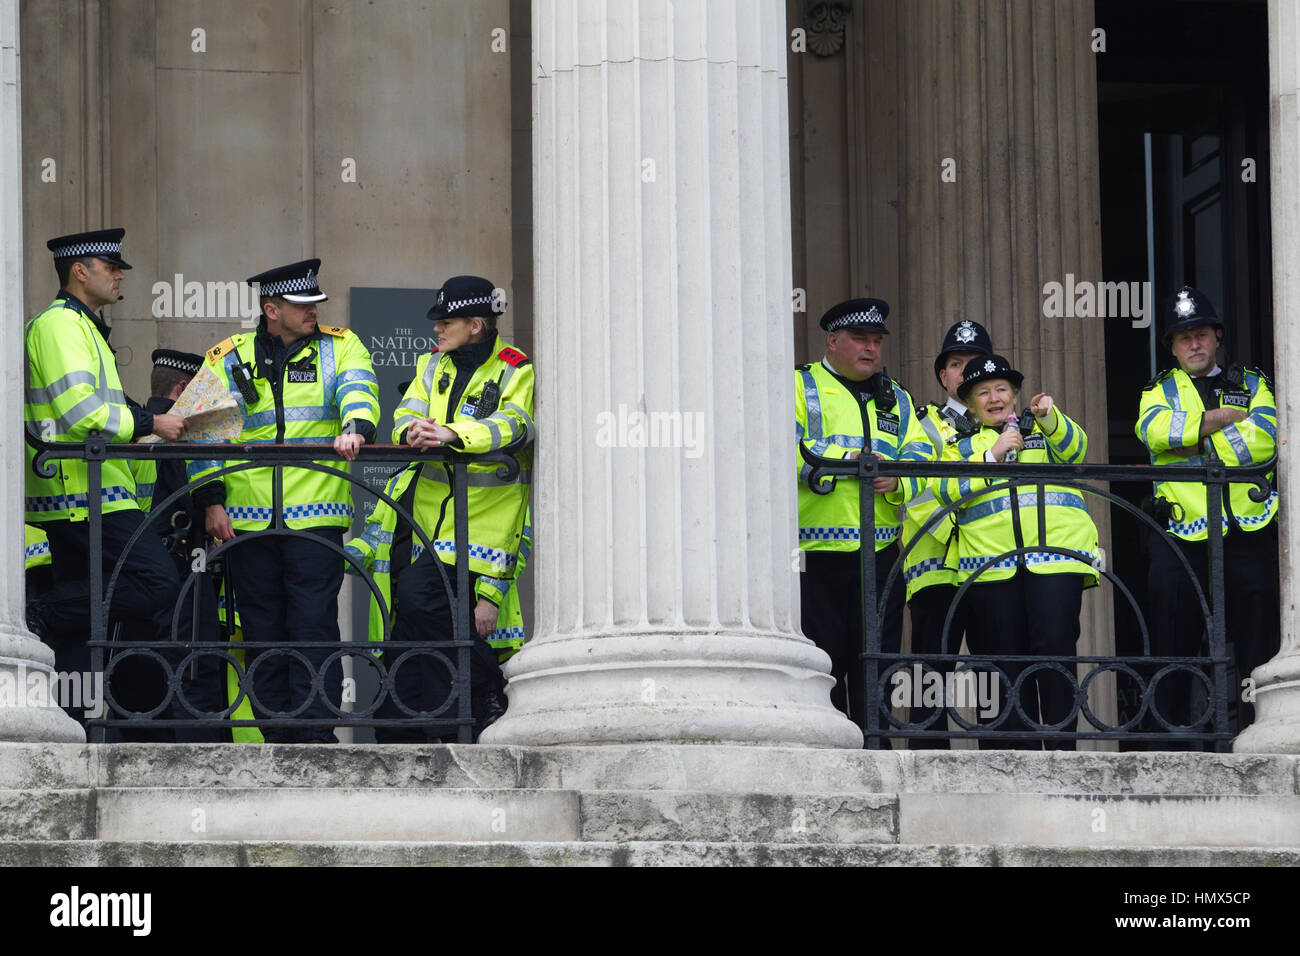 Metropolitanpolizei diensthabenden während einer Anti-Kürzungen Protest im Zentrum von London, England, Vereinigtes Königreich Stockfoto